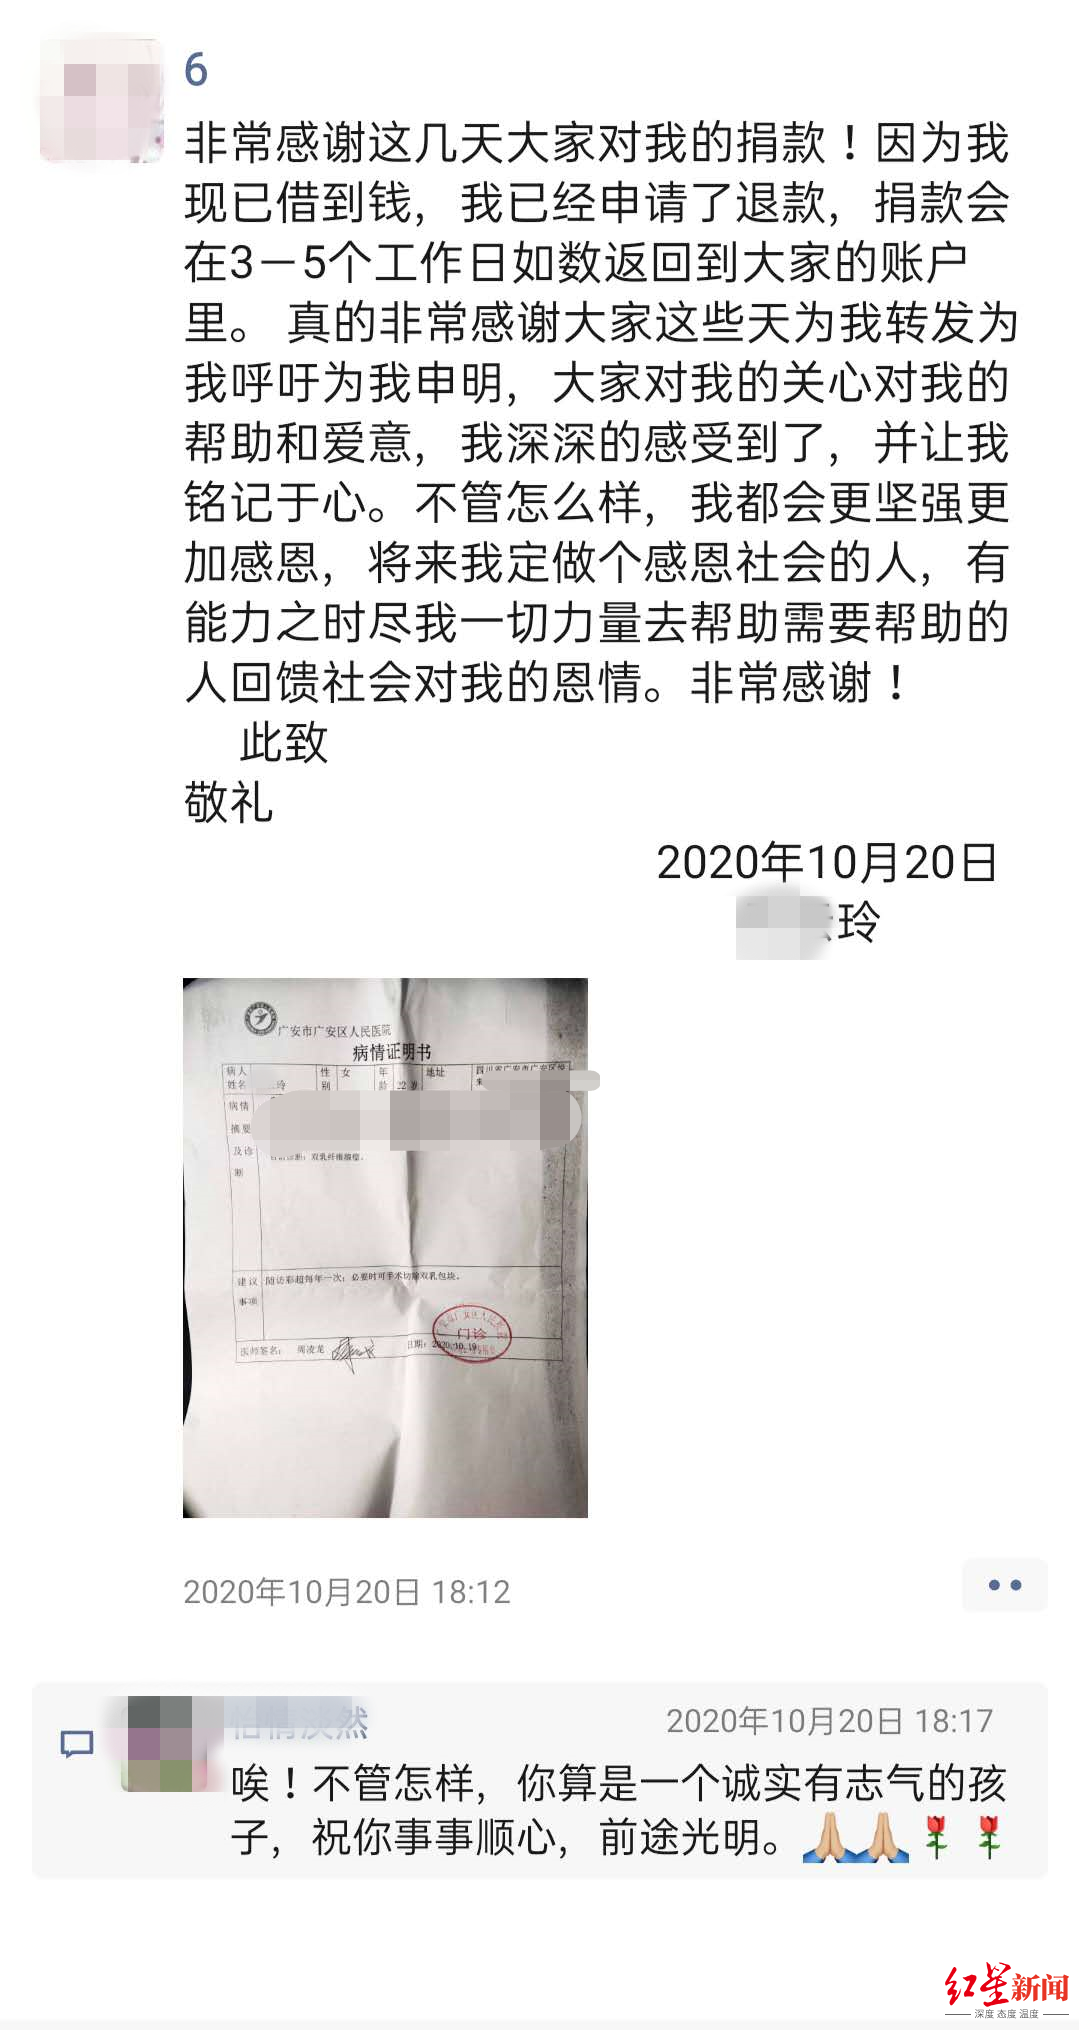 小玲发布在朋友圈的申请退款说明